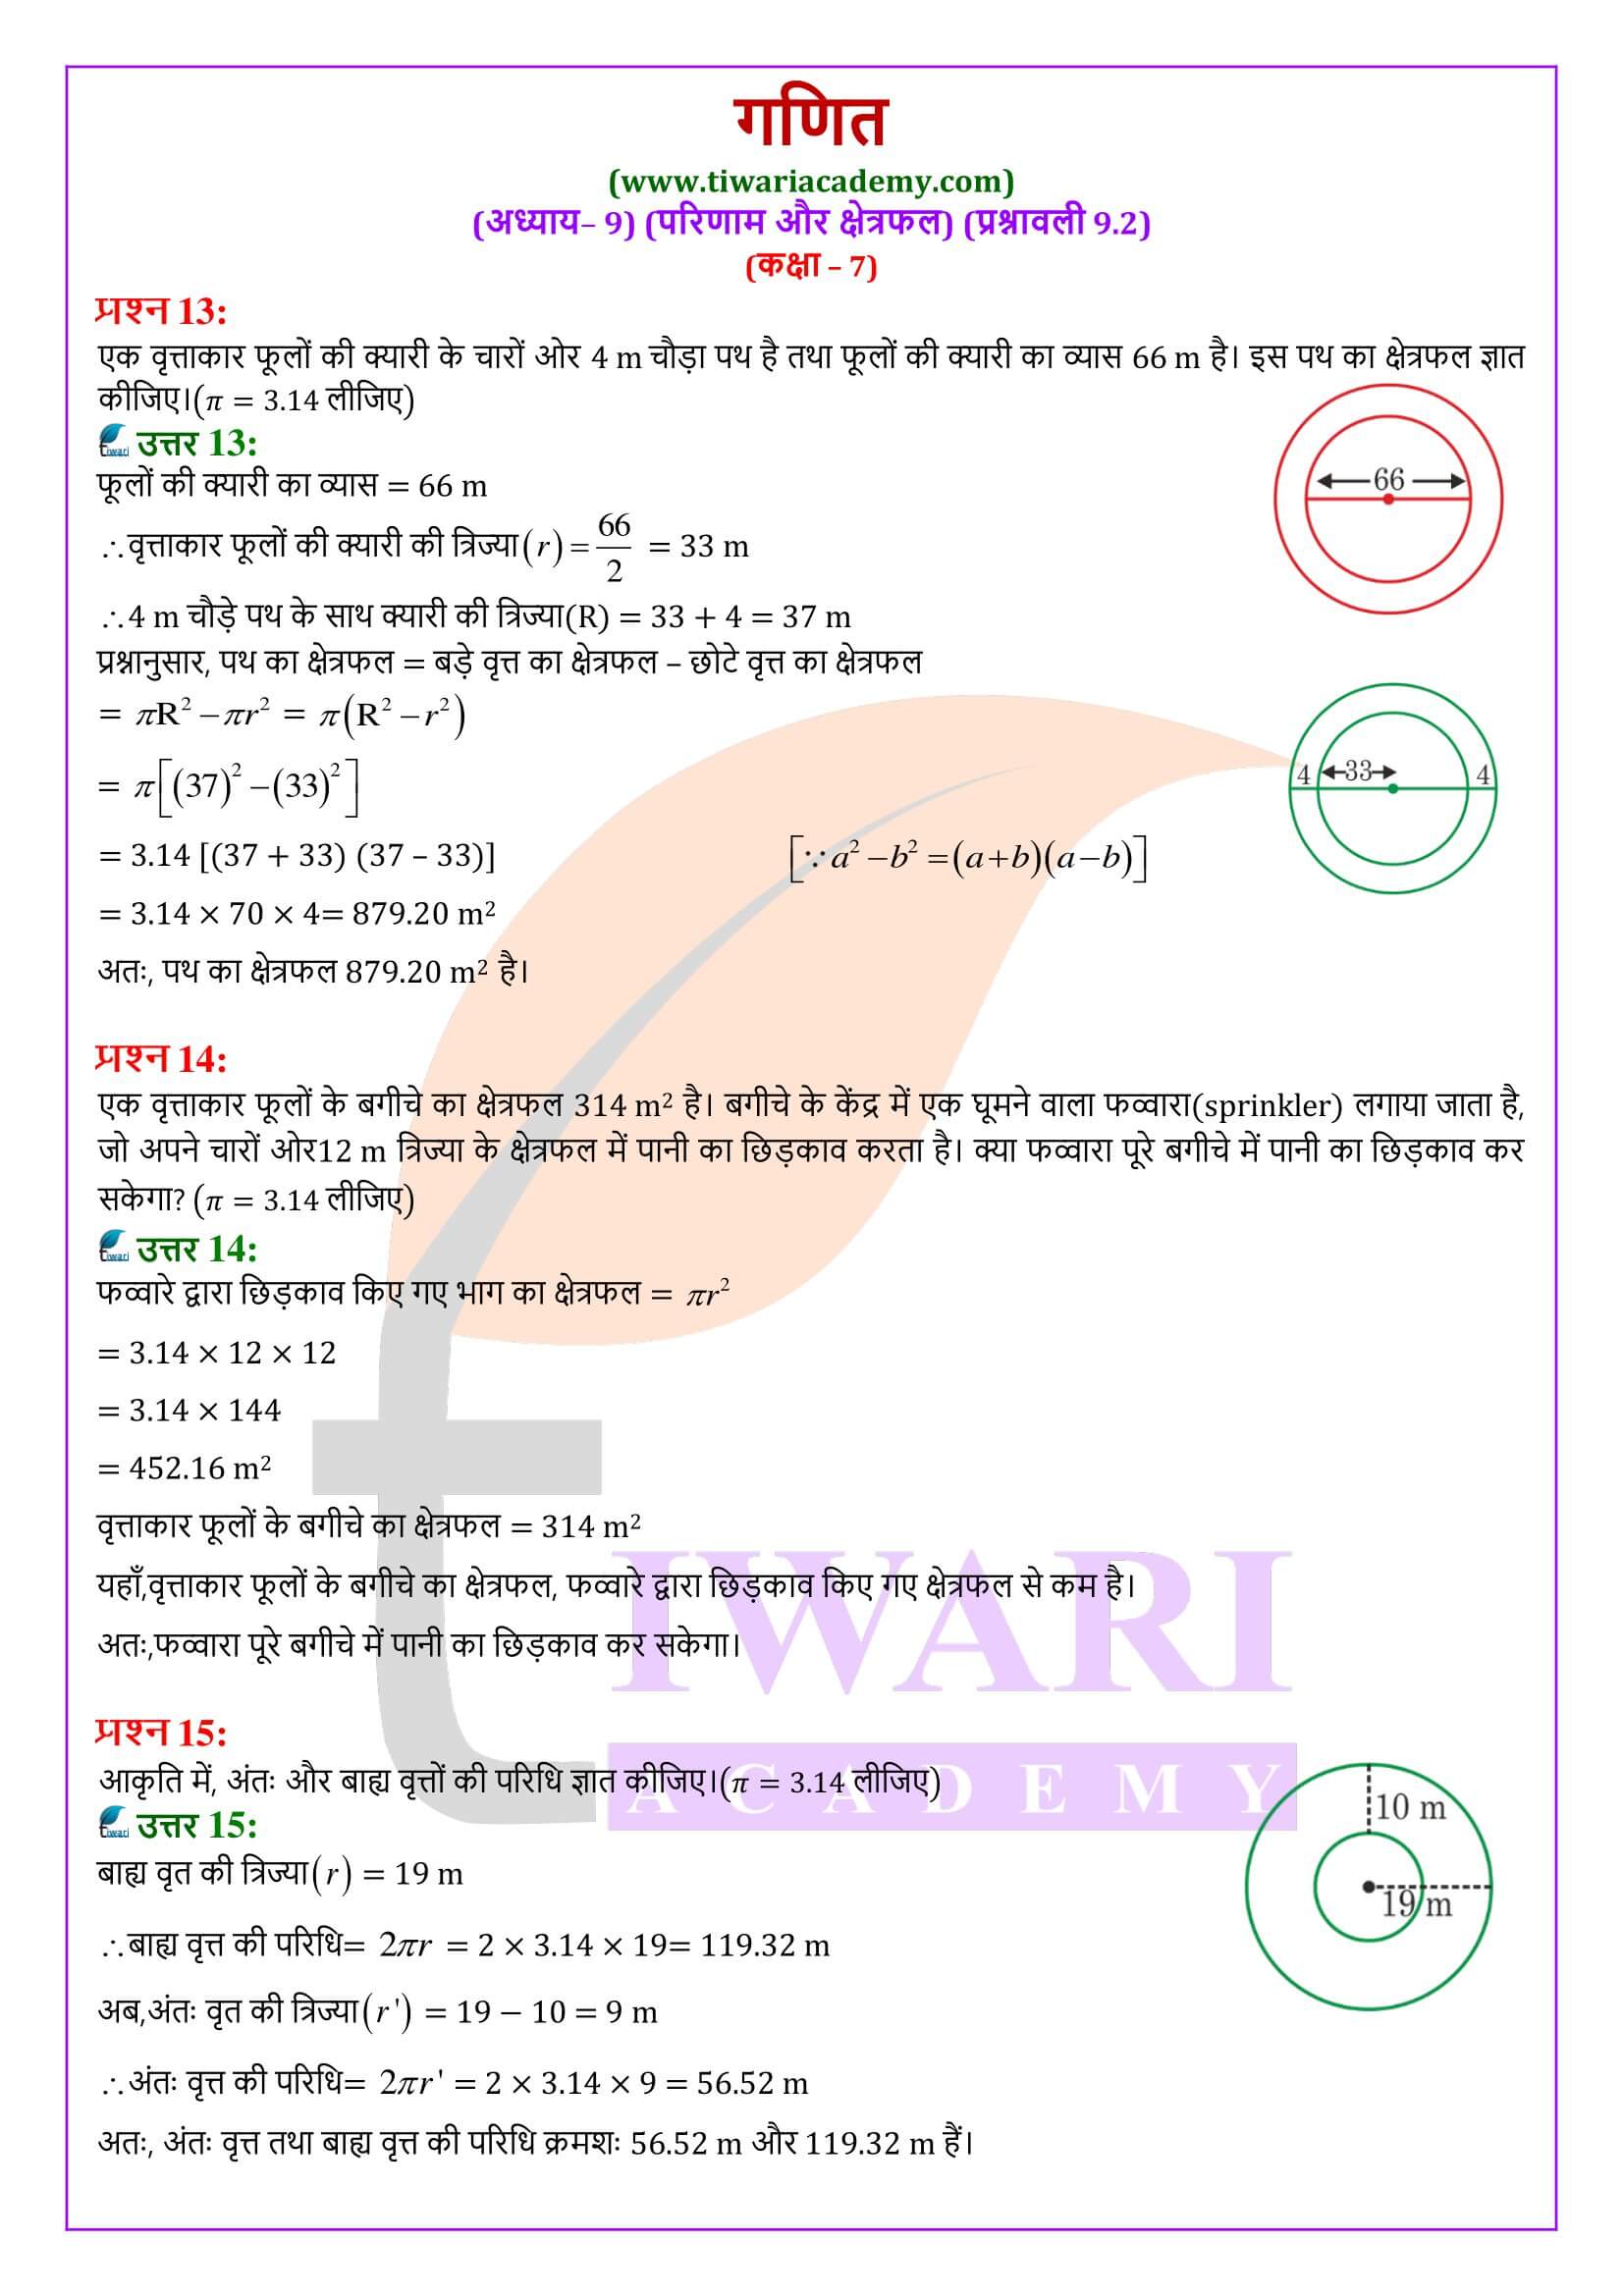 एनसीईआरटी समाधान कक्षा 7 गणित प्रश्नावली 9.2 के हल हिंदी में